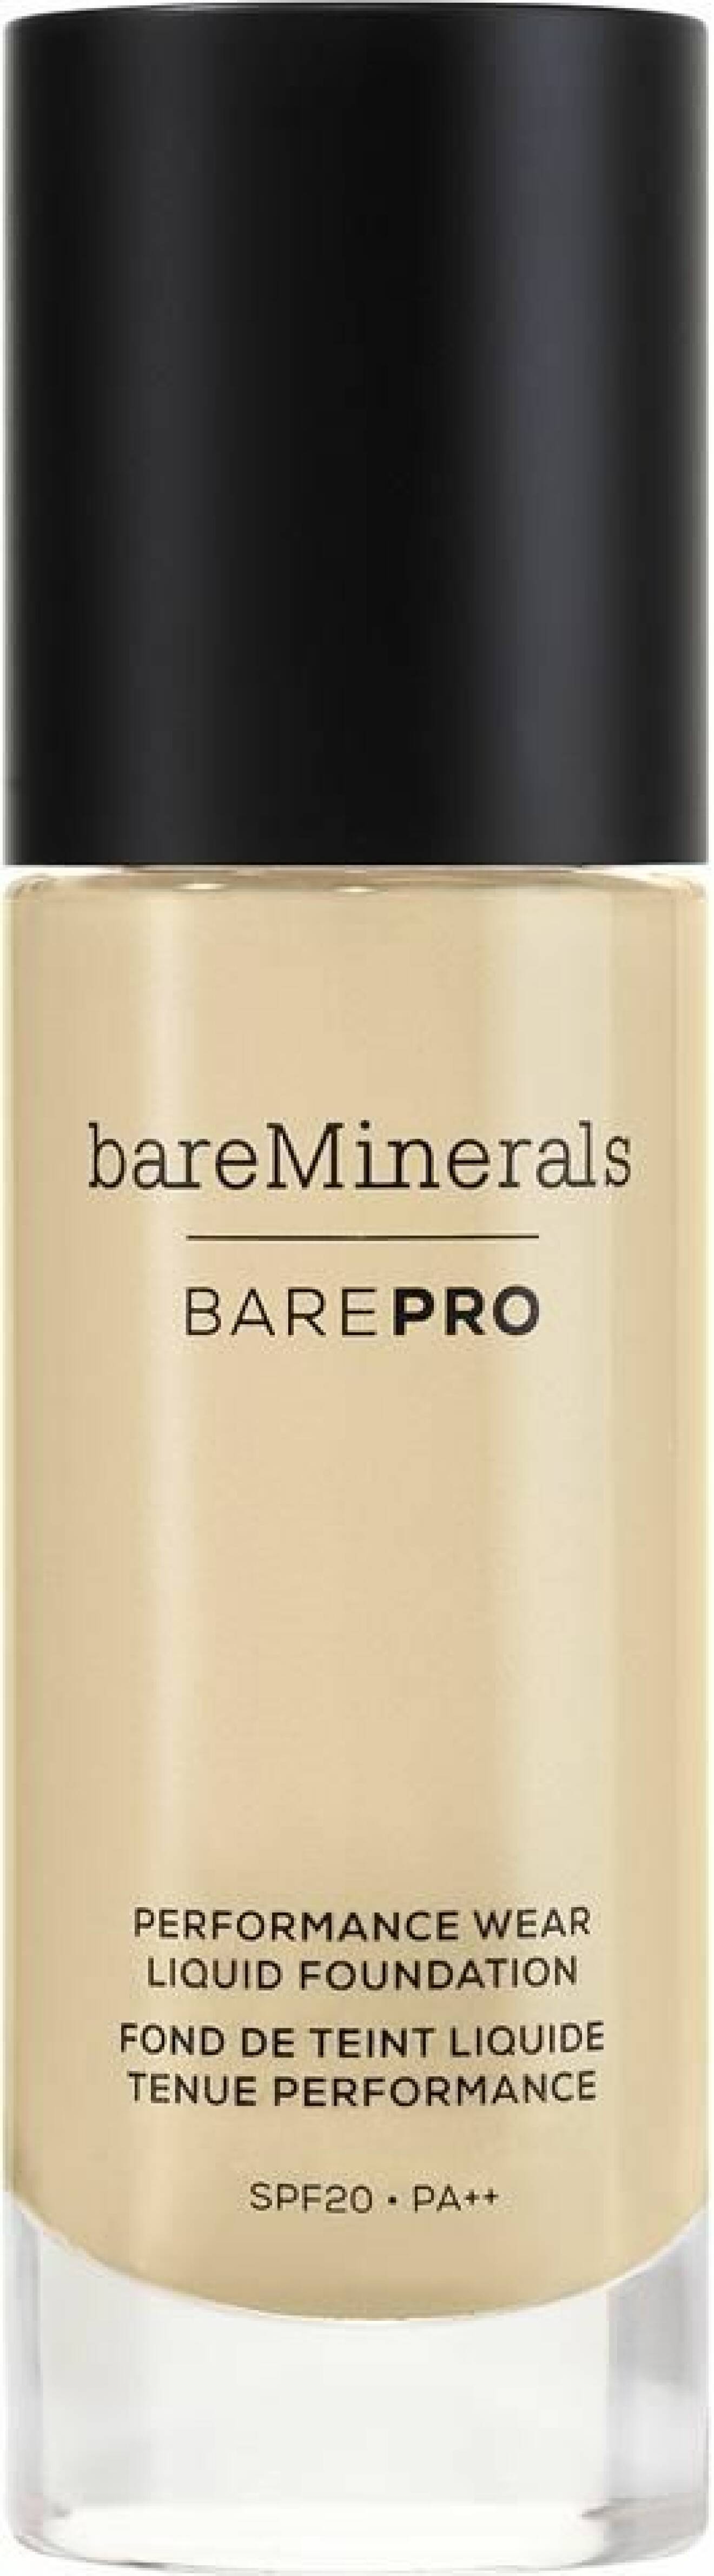 Ny foundation från Bare Minerals är Bare pro med spf 20.